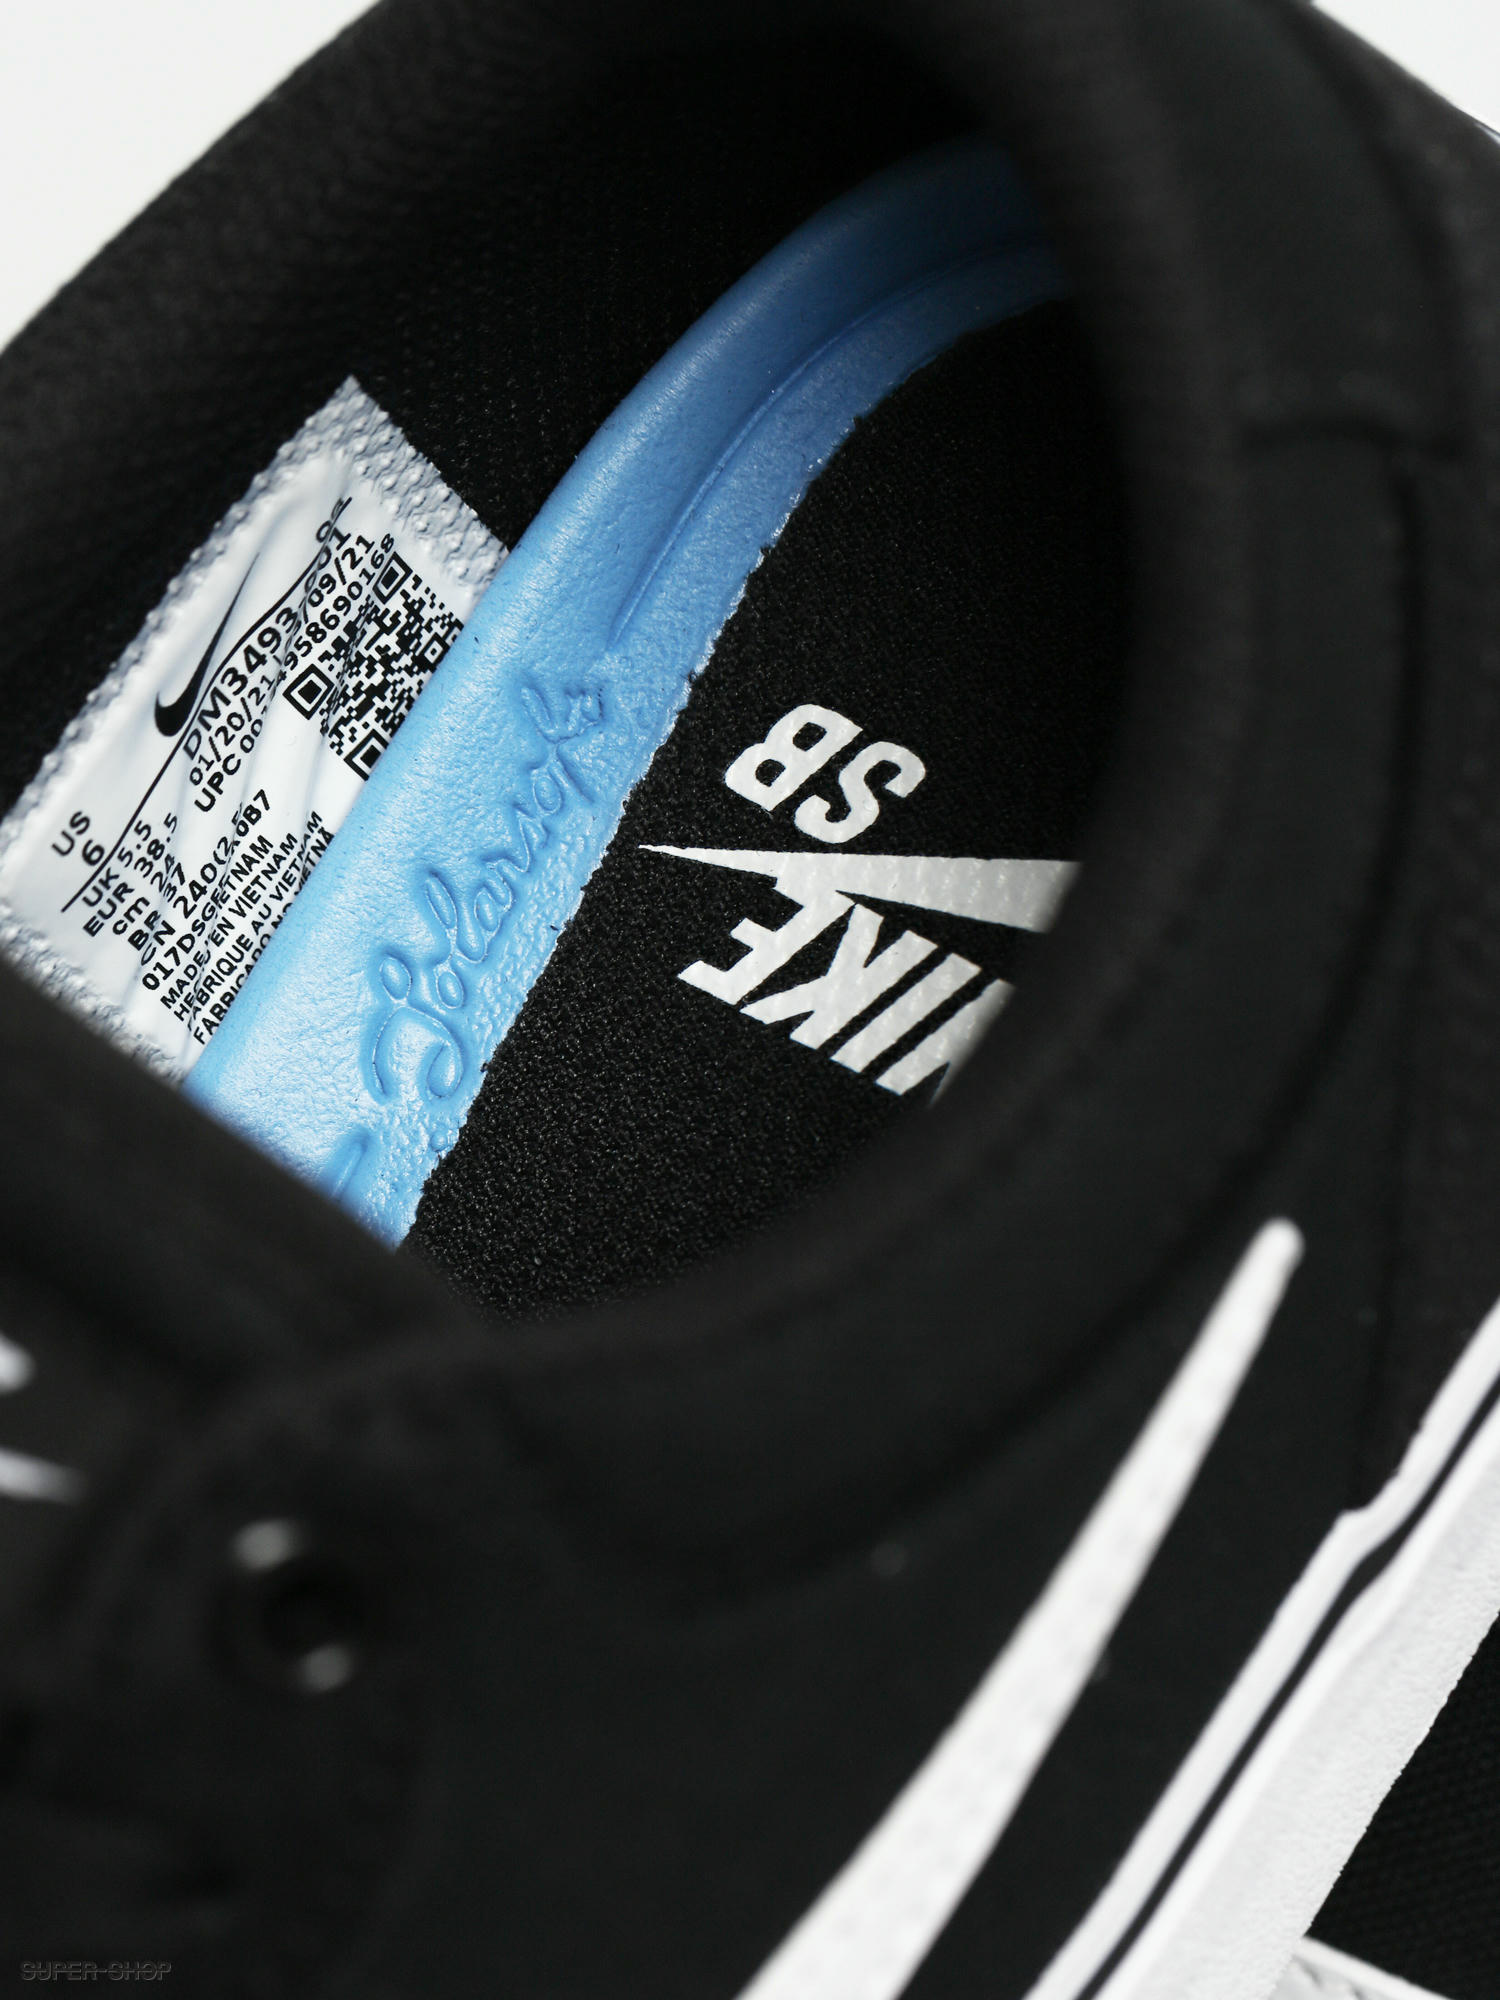 weefgetouw licht streep Nike SB Chron 2 Shoes (black/white black)